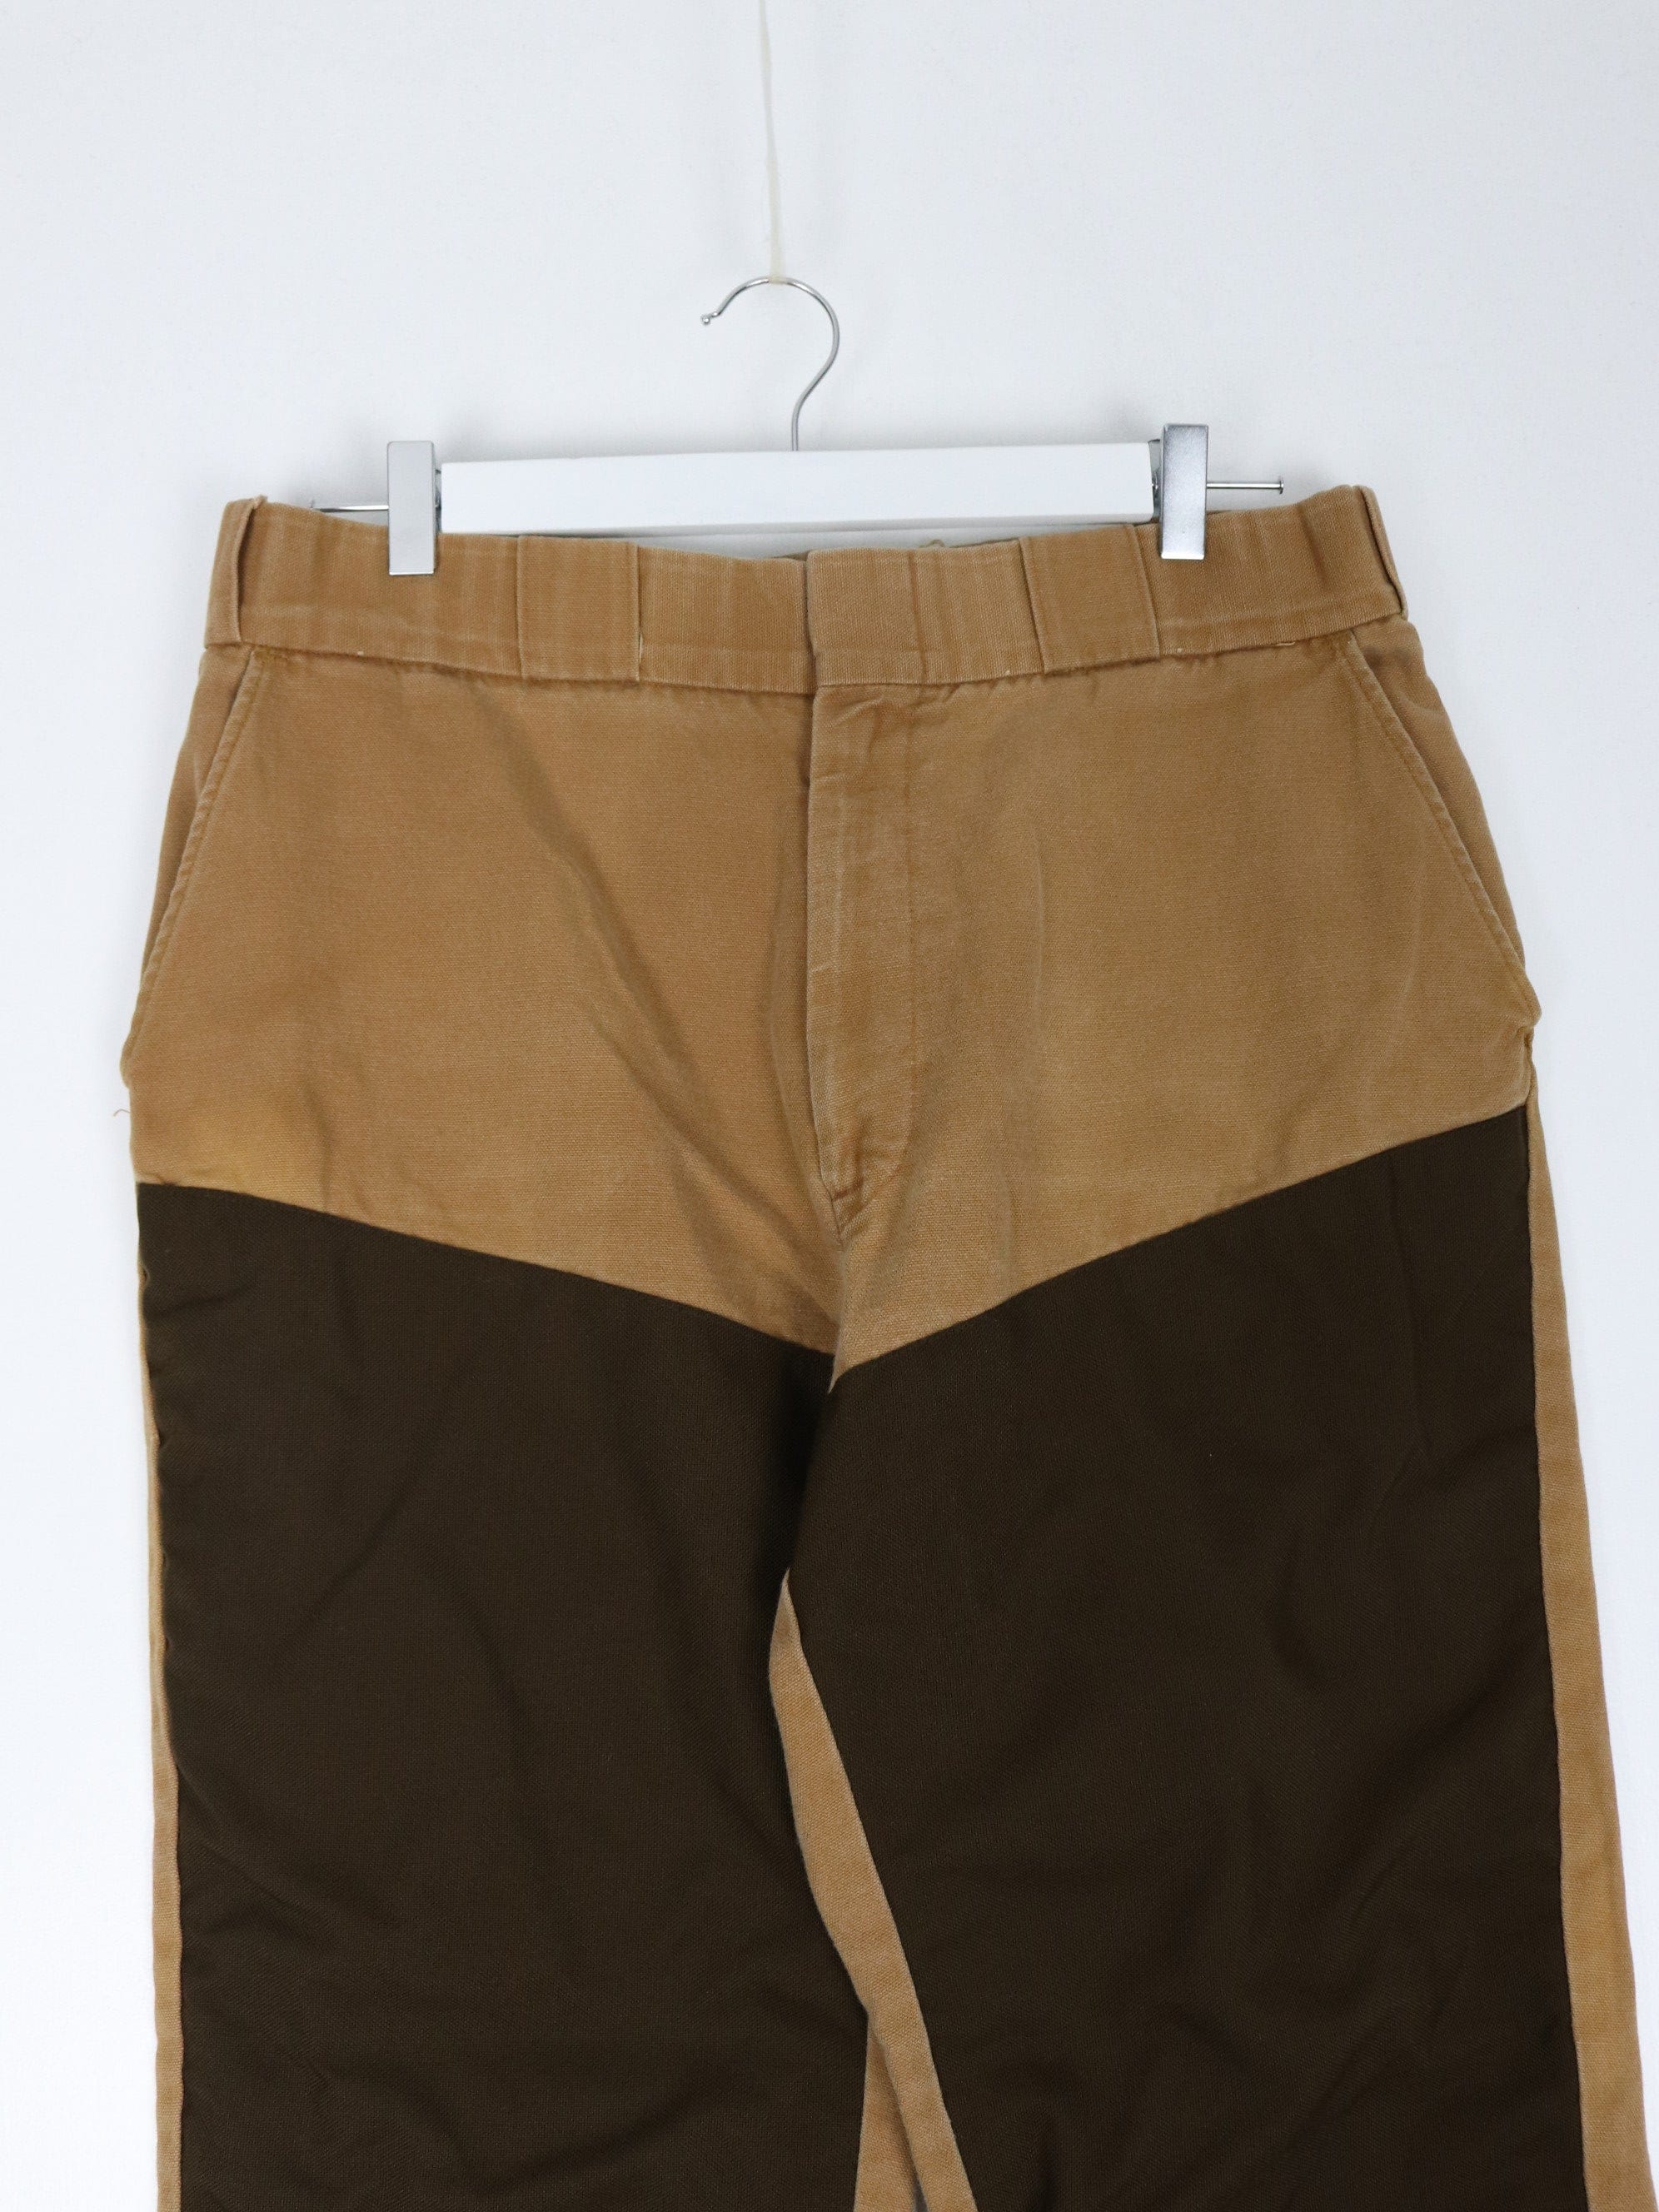 Vintage Carhartt Pants Mens 37 x 30 Brown Work Wear Carpenters